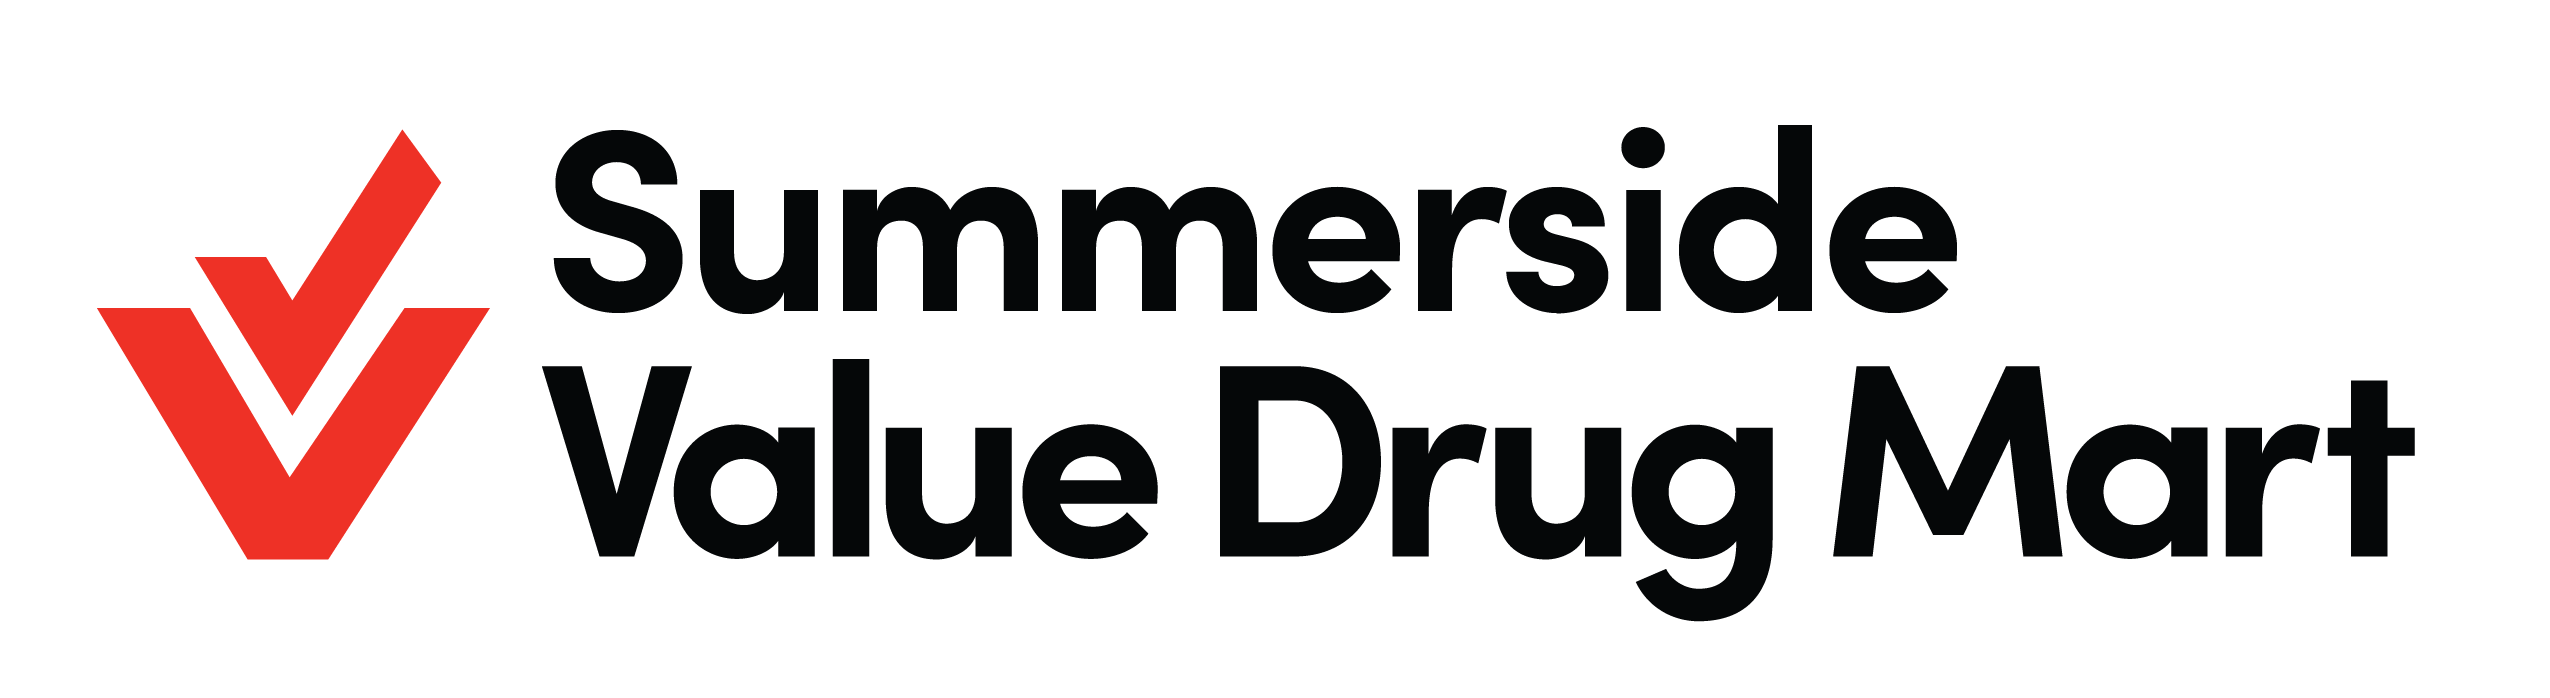 Summerside Value Drug Mart